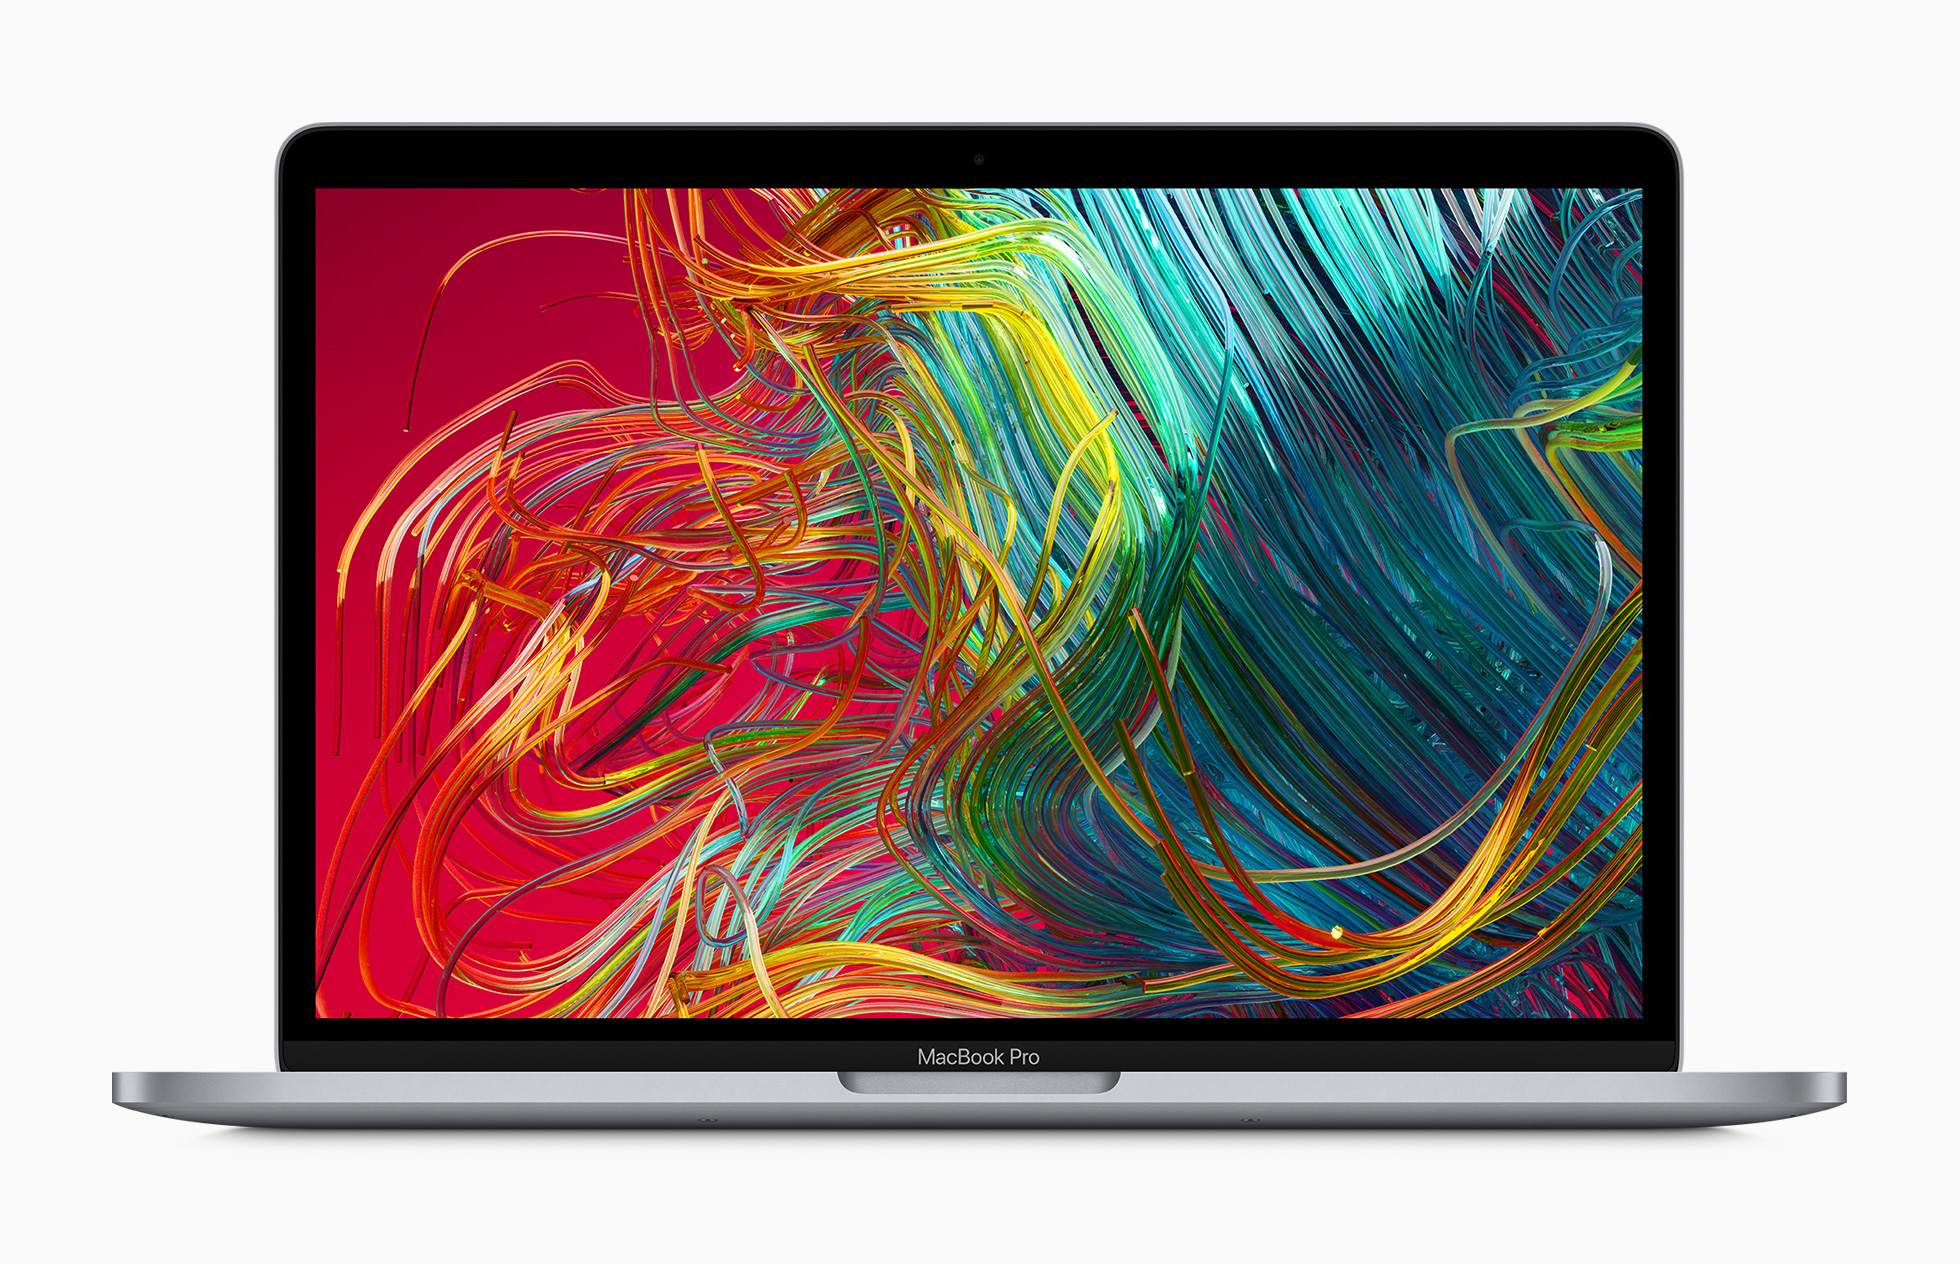 الأخبار 8 مايو 2020 'MacBook Pro (13 inch) يستخدم معالج Intel Ice Lake المخصص